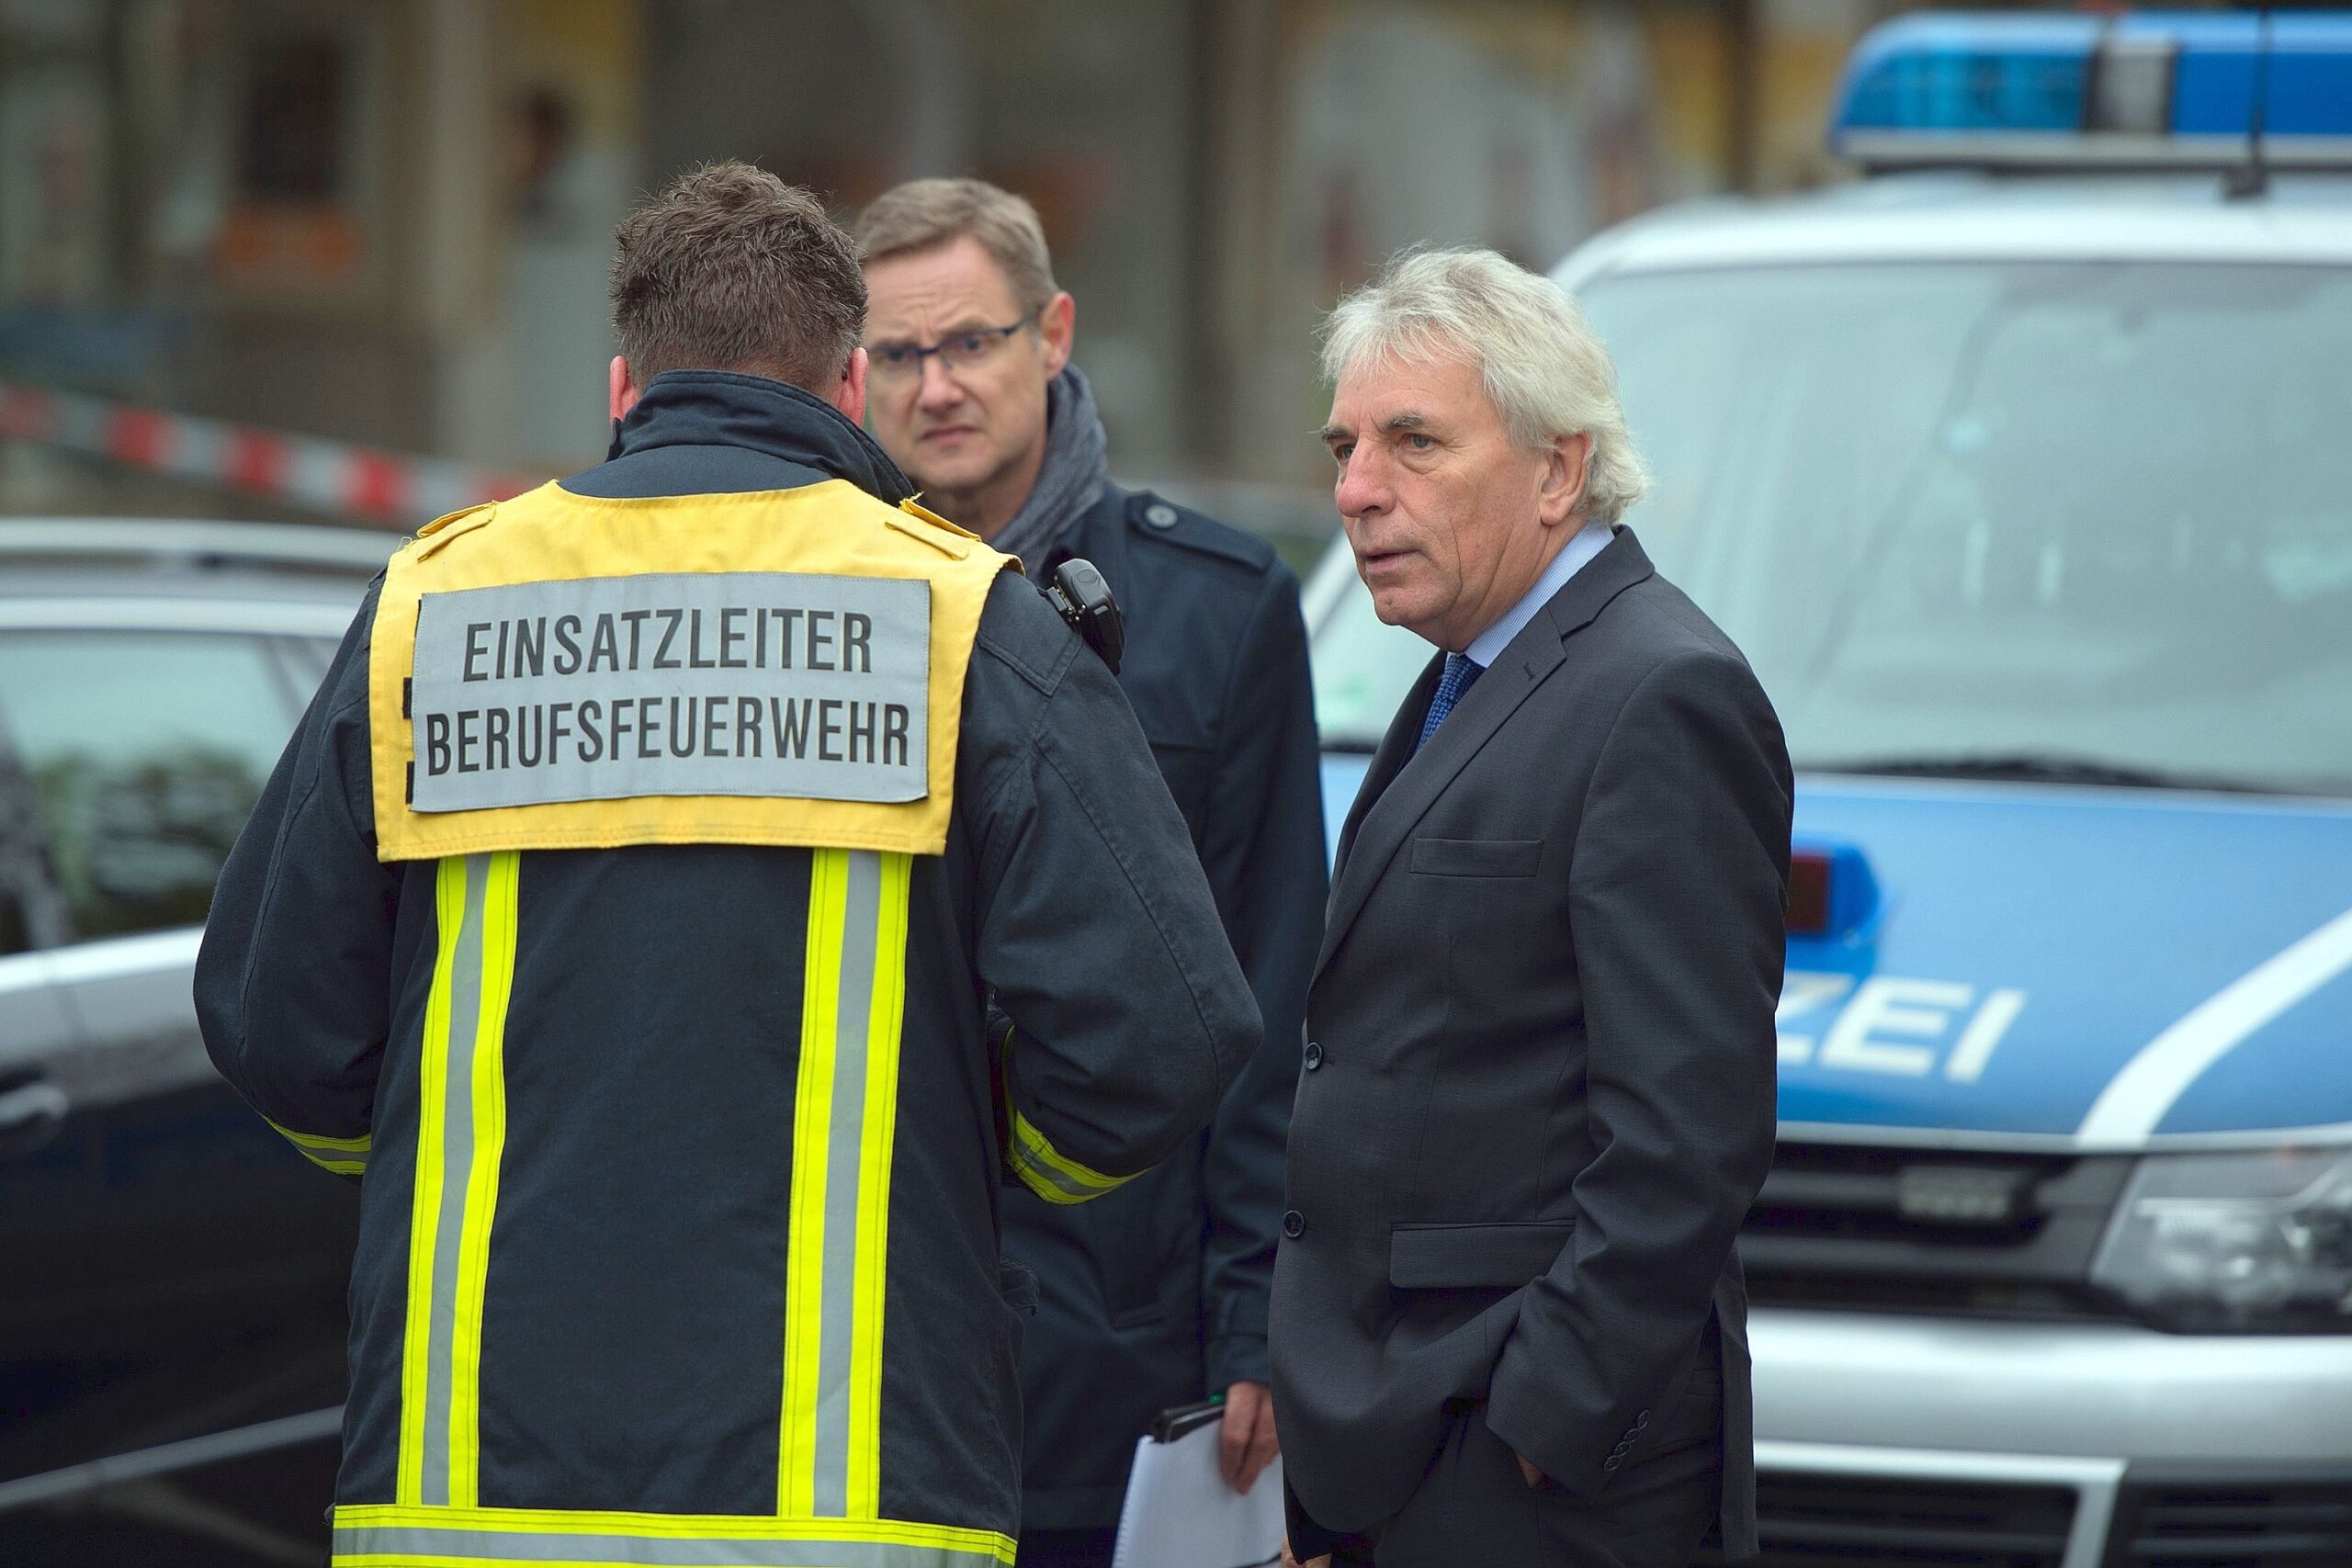 Der Kölner Oberbürgermeister Jürgen Roters (SPD, re.) informierte sich nach dem Attentat am Tatort.